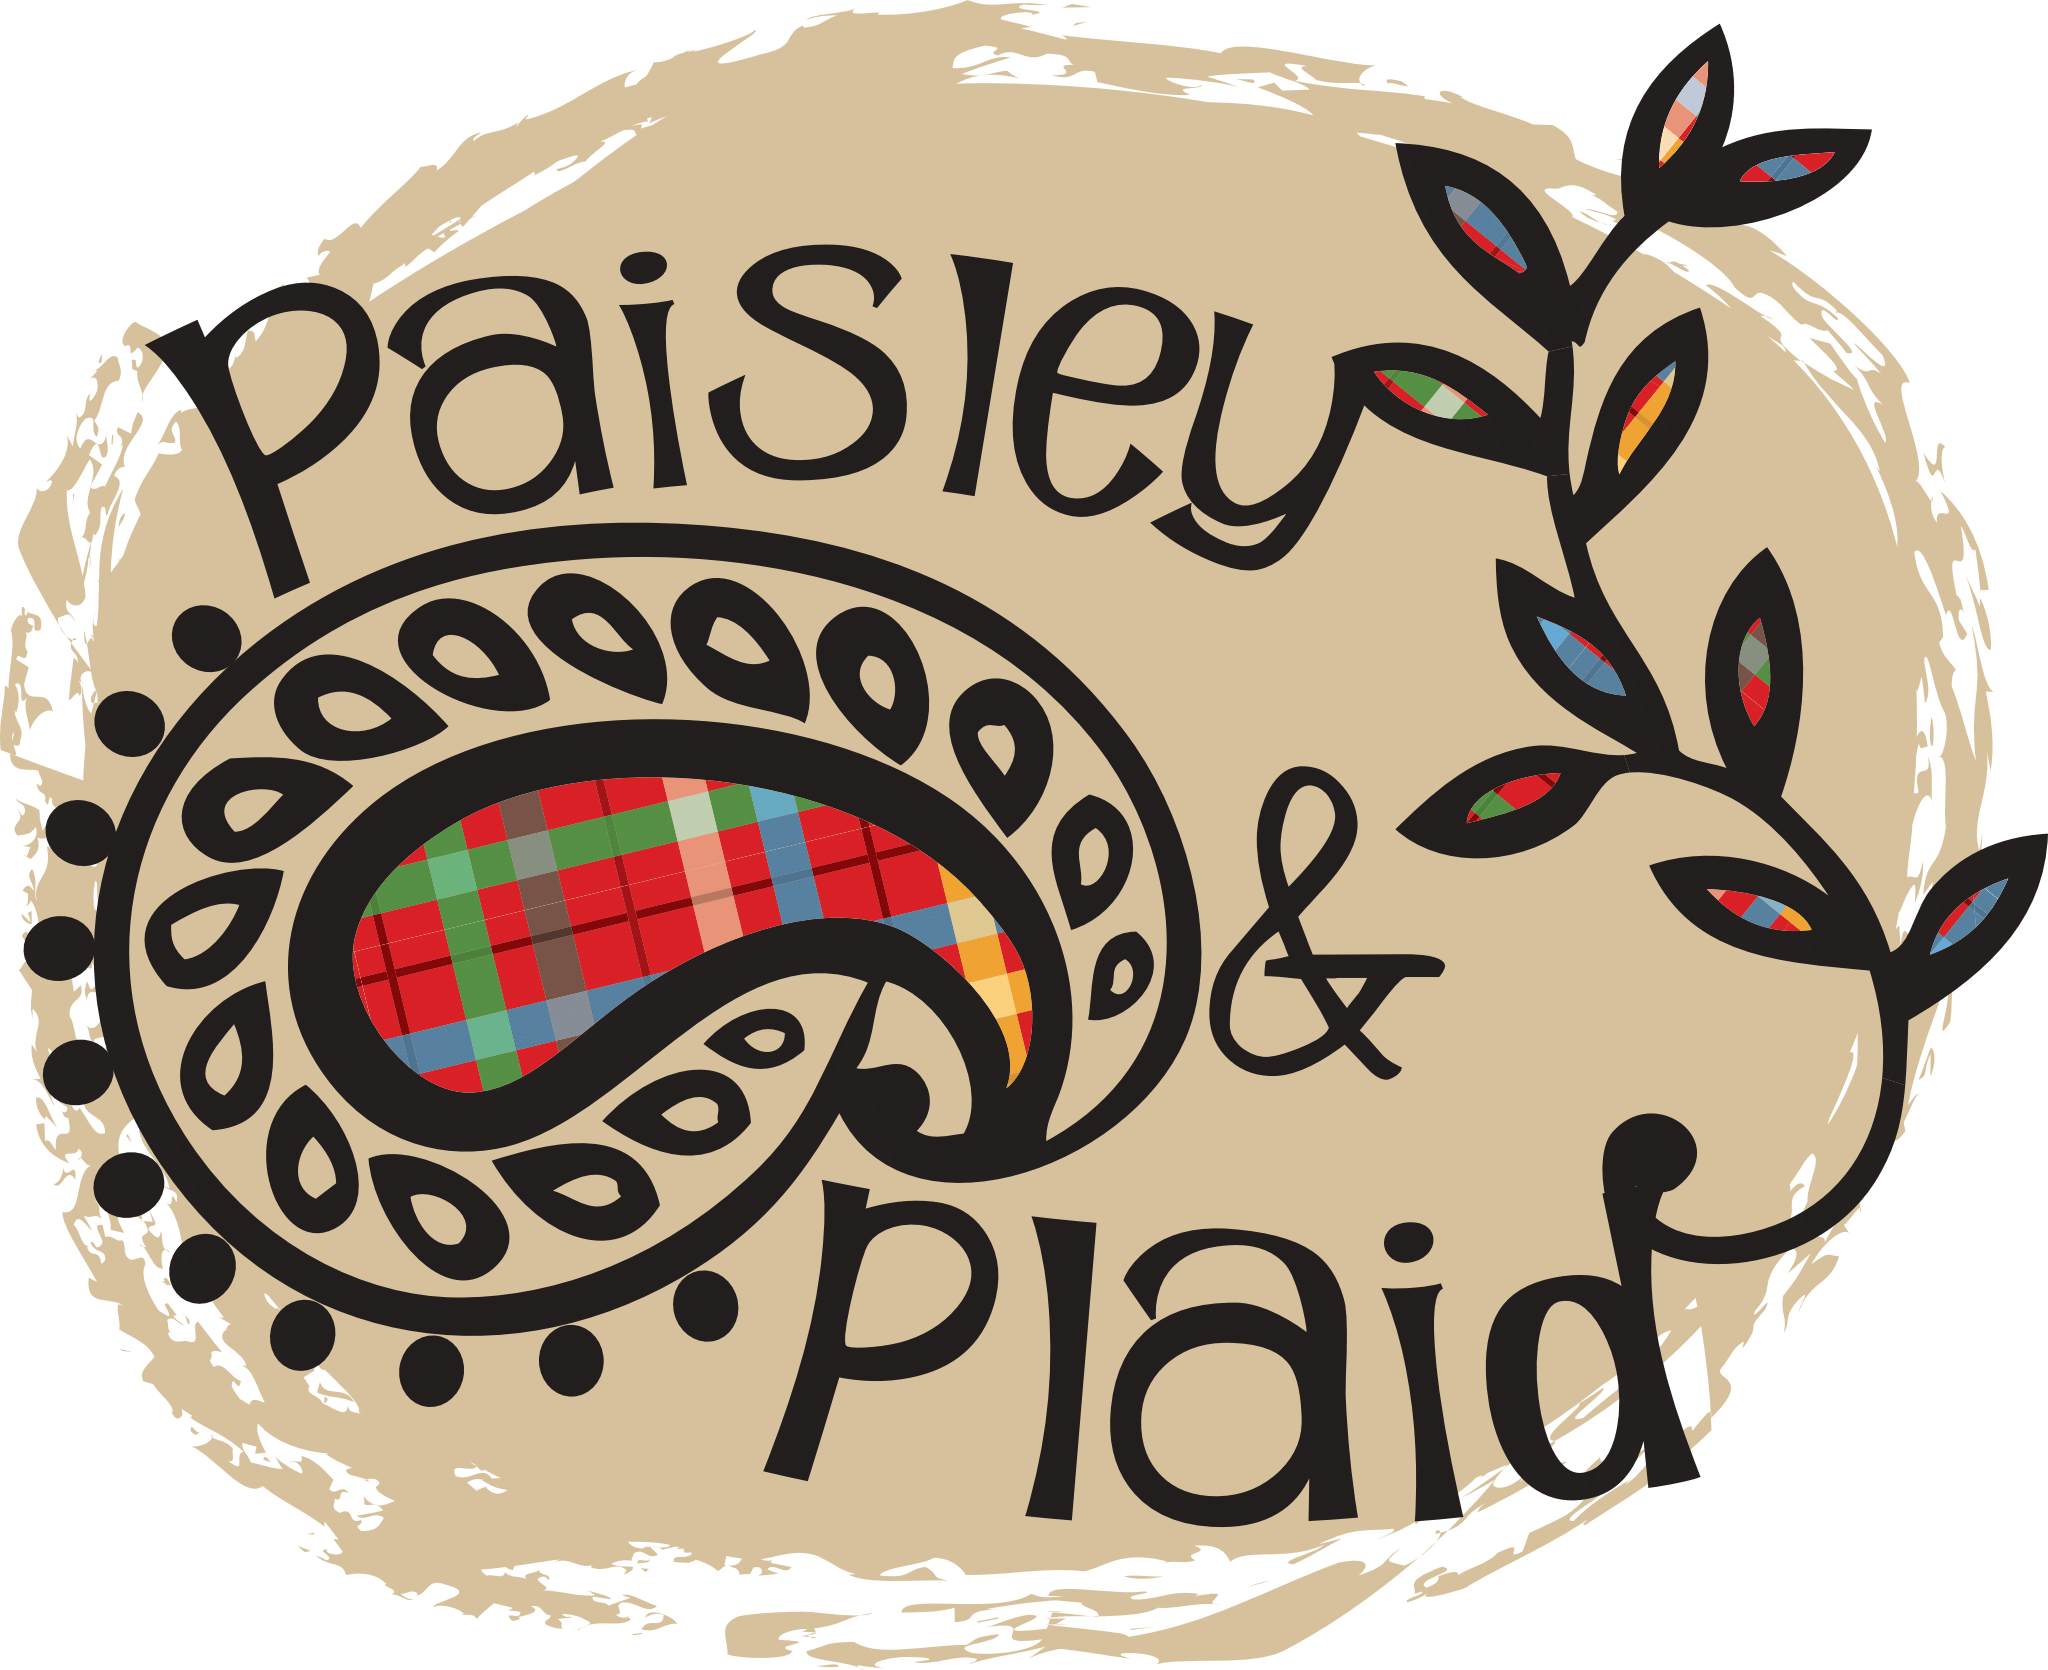 Paisley & Plaid